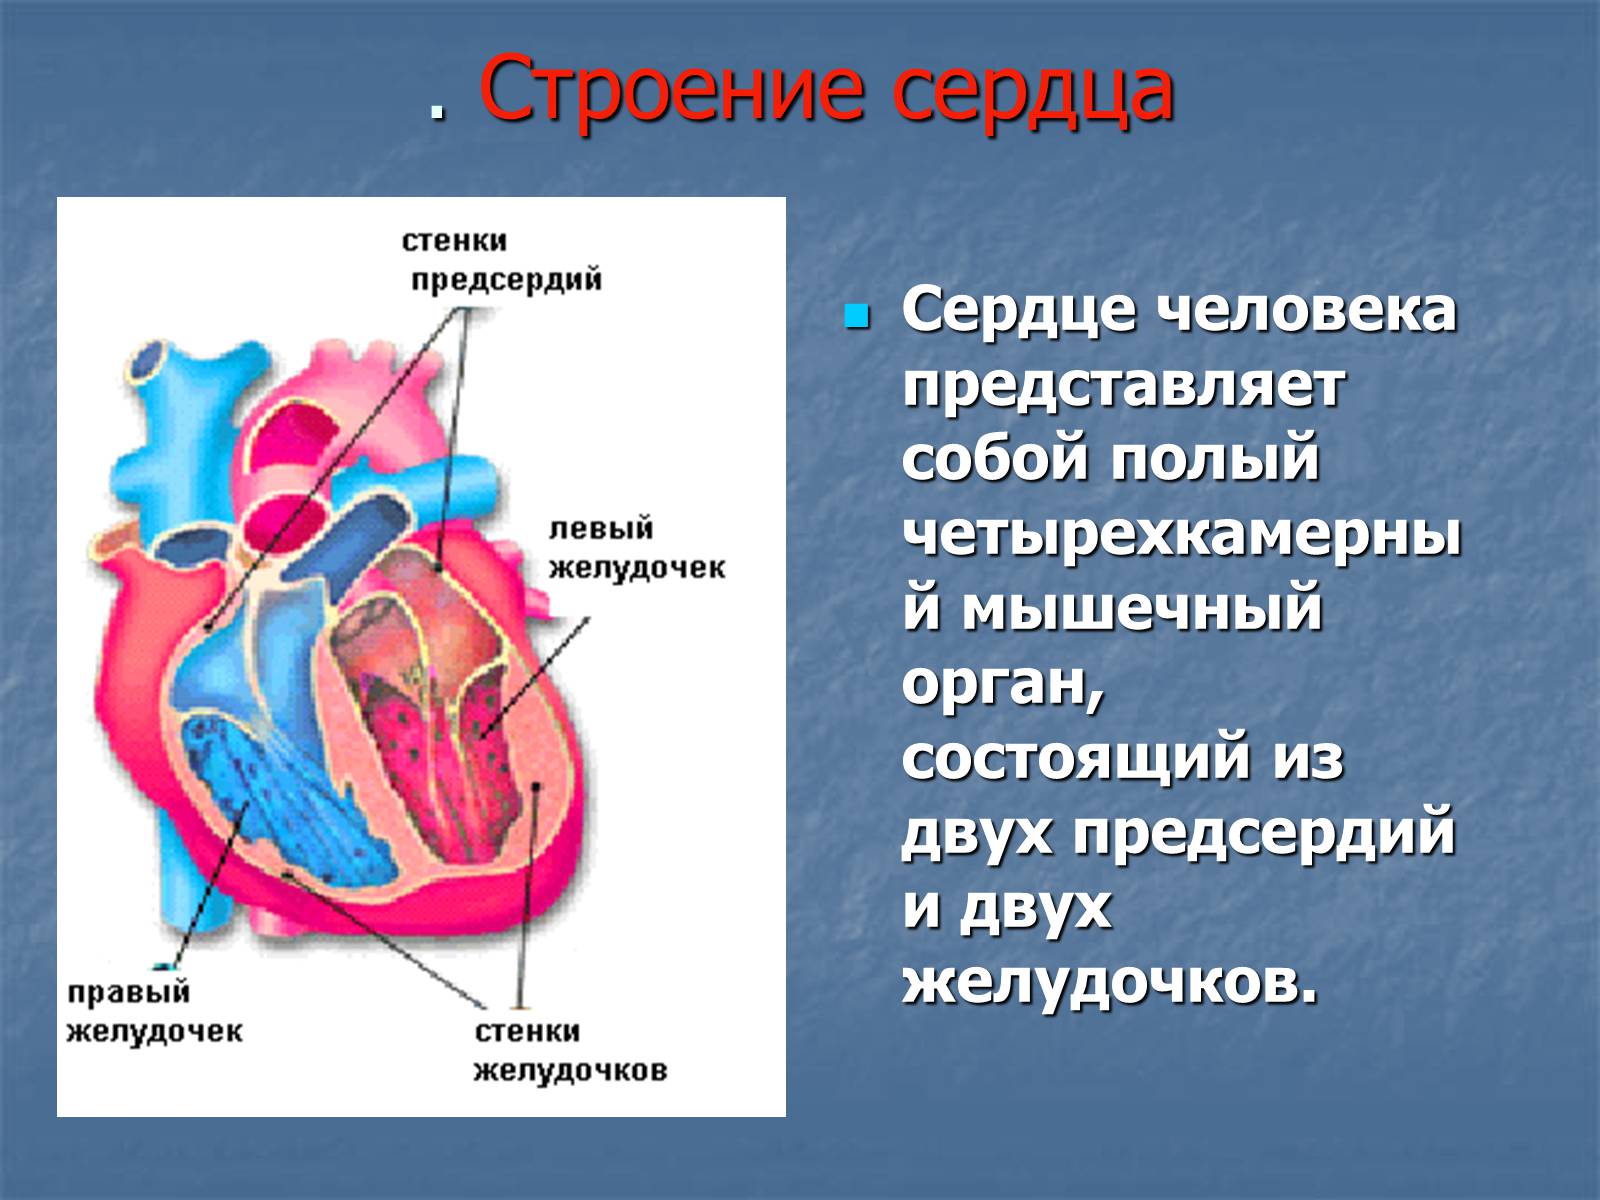 Правый желудочек отделен от правого предсердия. Строение желудочков сердца анатомия. 2 Желудочка и 2 предсердия. Сердце анатомия желудочки и предсердия. Строение сердца человека желудочки и предсердия.